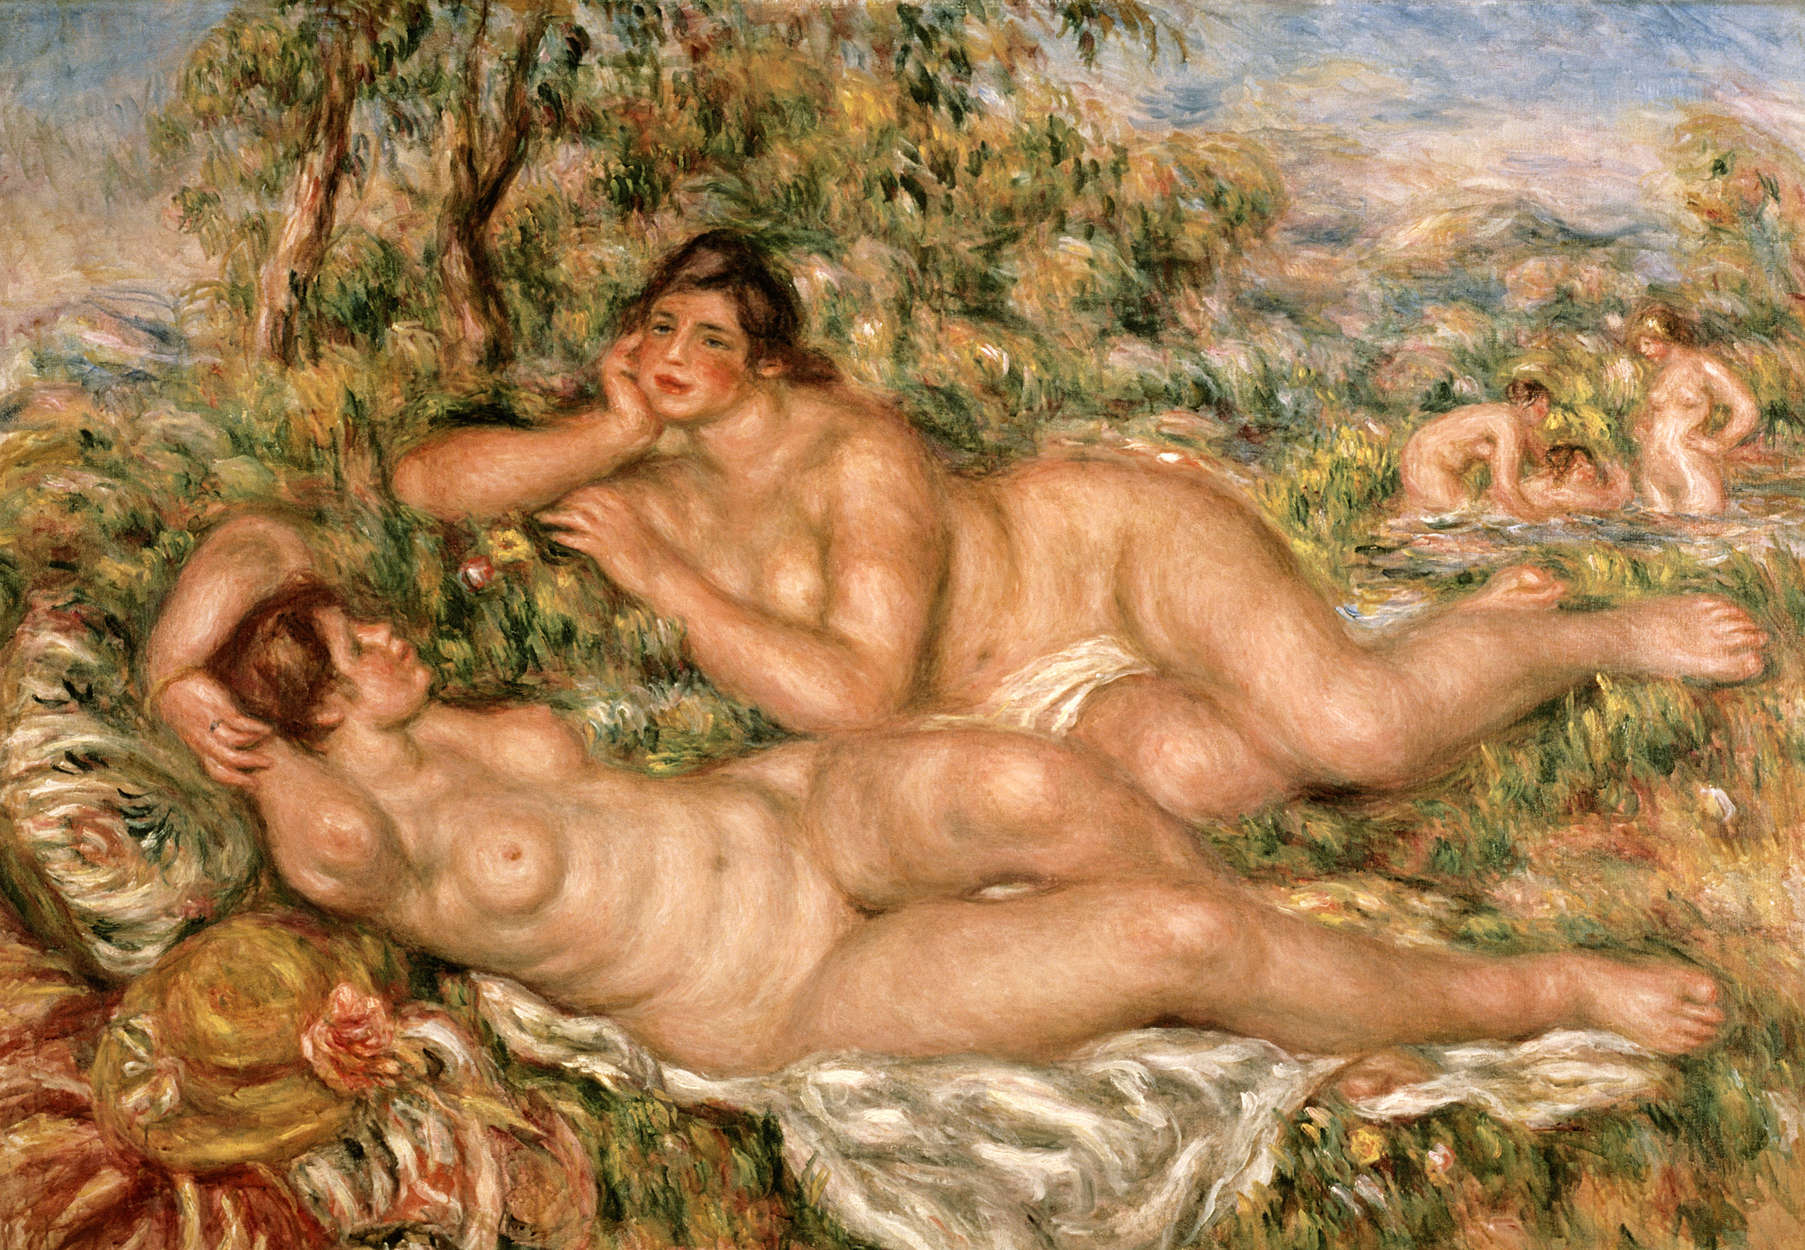             Fototapete "Badende" von Pierre Auguste Renoir
        